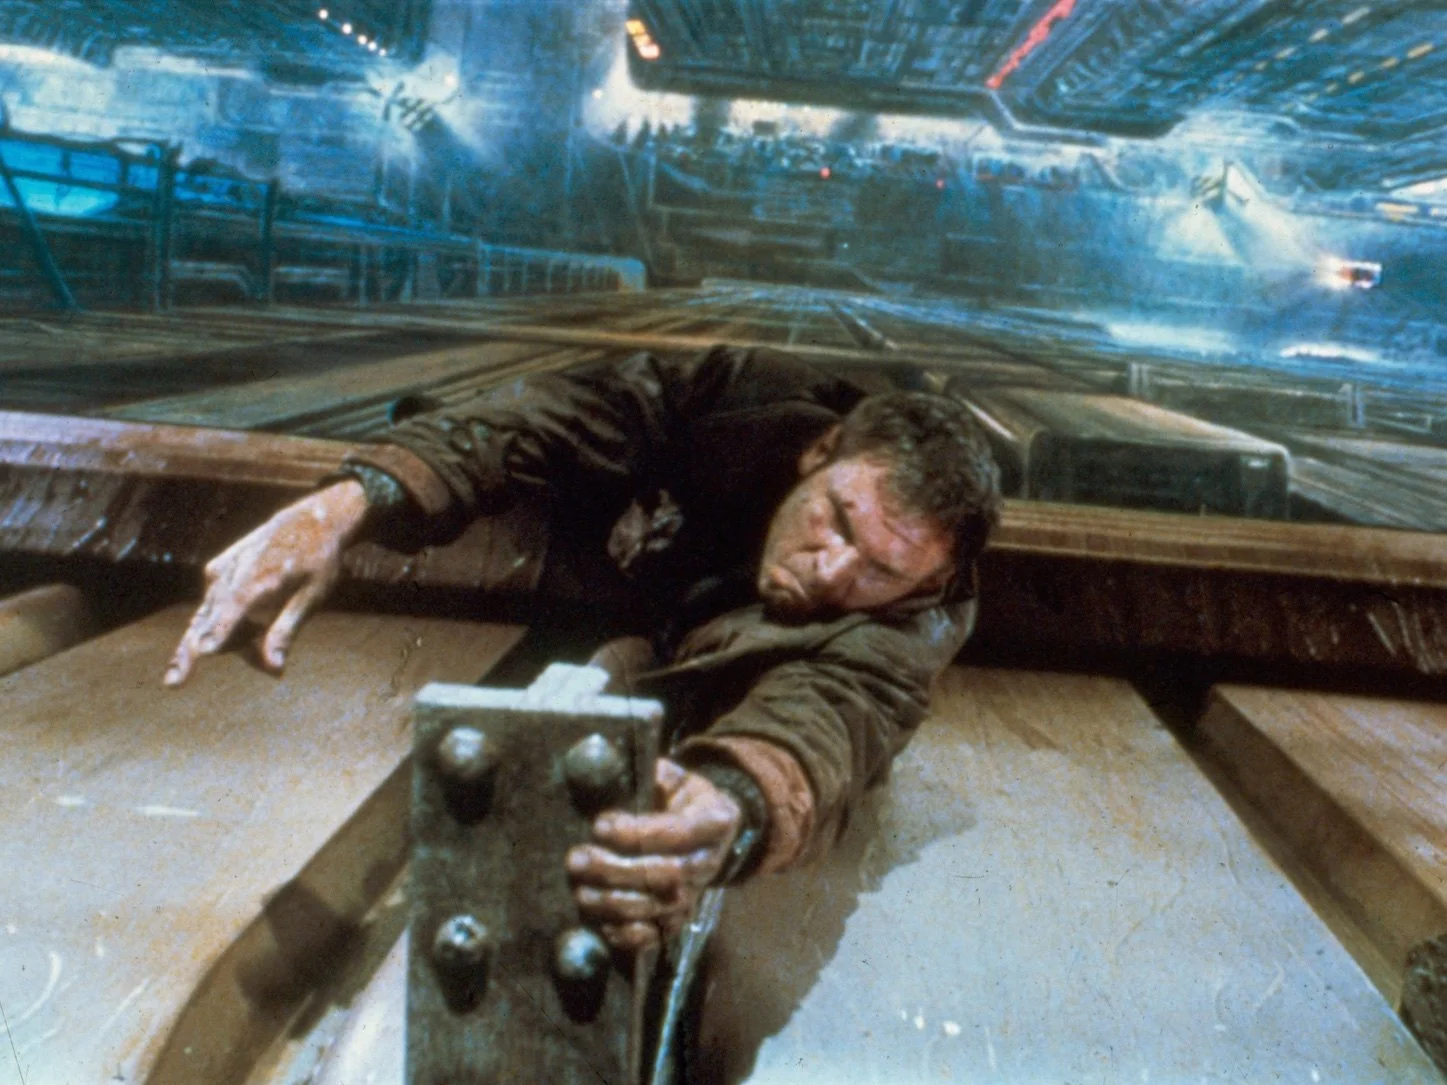 Ноябрь 2019 года — время действия гениального фильма Ридли Скотта Blade Runner, известного у нас как «Бегущий по лезвию» (на кассетах — «Бегущий по лезвию бритвы»). В связи с этим «Канобу» публикует улучшенную и дополненную серию материалов, посвященных великой картине. Первый текст — о влиянии Blade Runner на массовую культуру, в оригинале опубликованный в сентябре 2017 года по случаю скорой премьеры Blade Runner 2049.